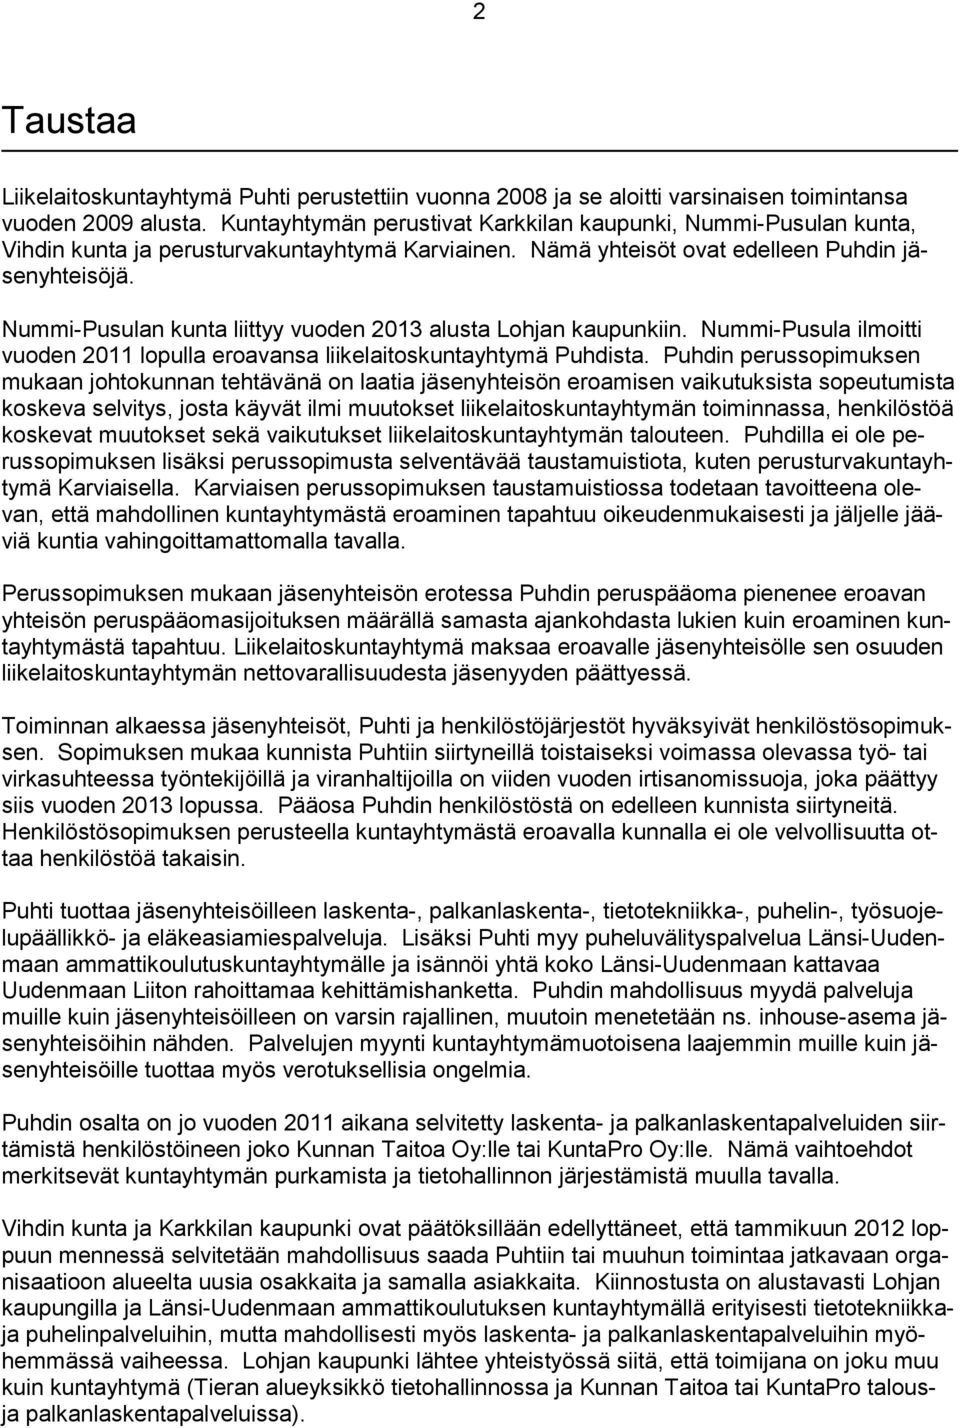 Nummi-Pusulan kunta liittyy vuoden 2013 alusta Lohjan kaupunkiin. Nummi-Pusula ilmoitti vuoden 2011 lopulla eroavansa liikelaitoskuntayhtymä Puhdista.